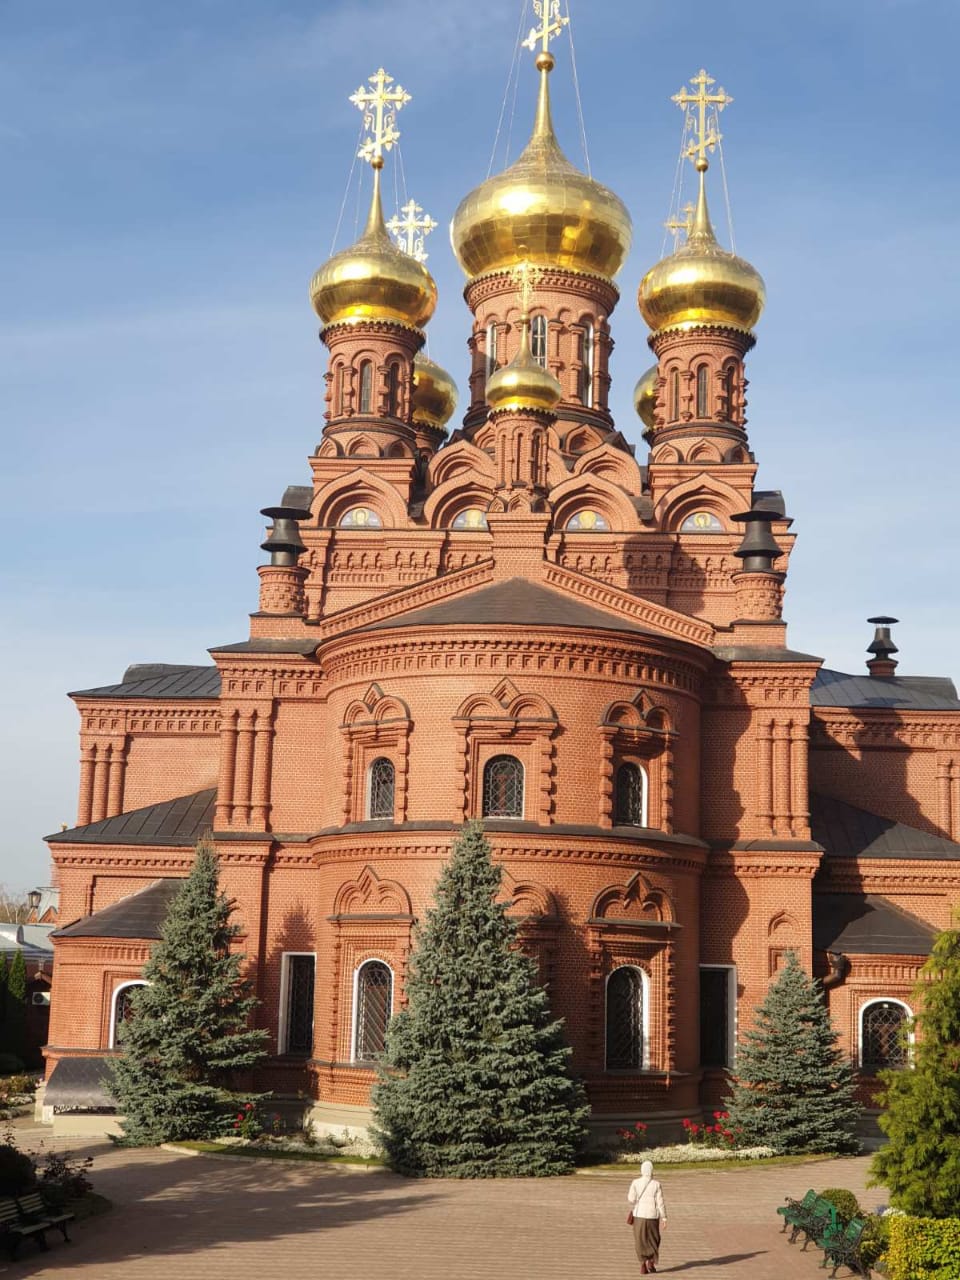 Доклад по теме Экскурсия по Останкино Троицкая церковь